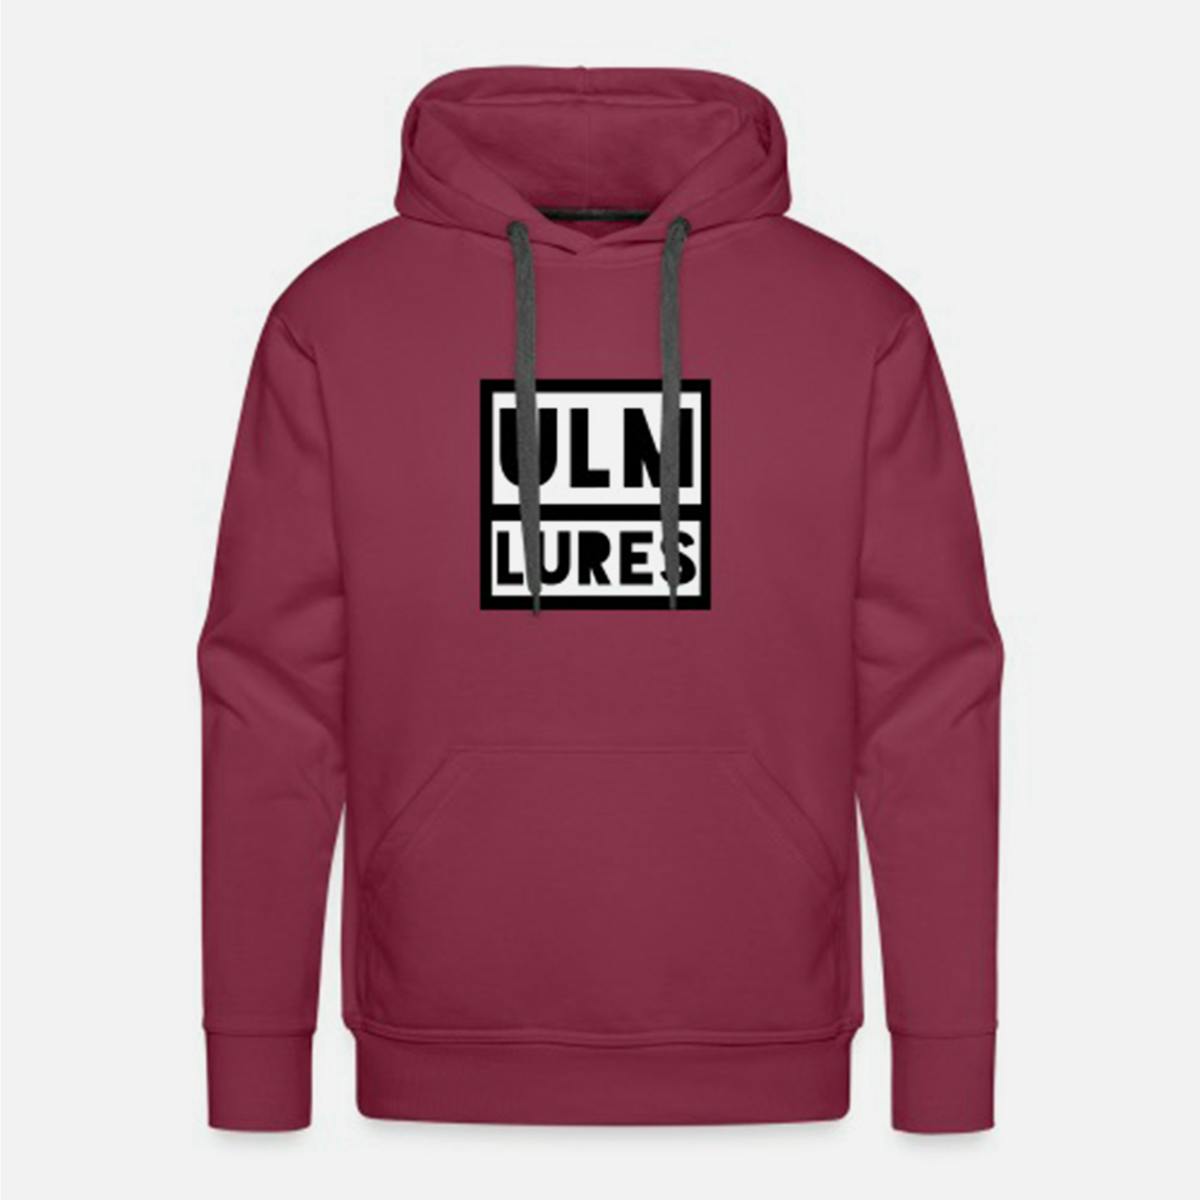 Ulm Lures Logo Hoodie - Burgundy